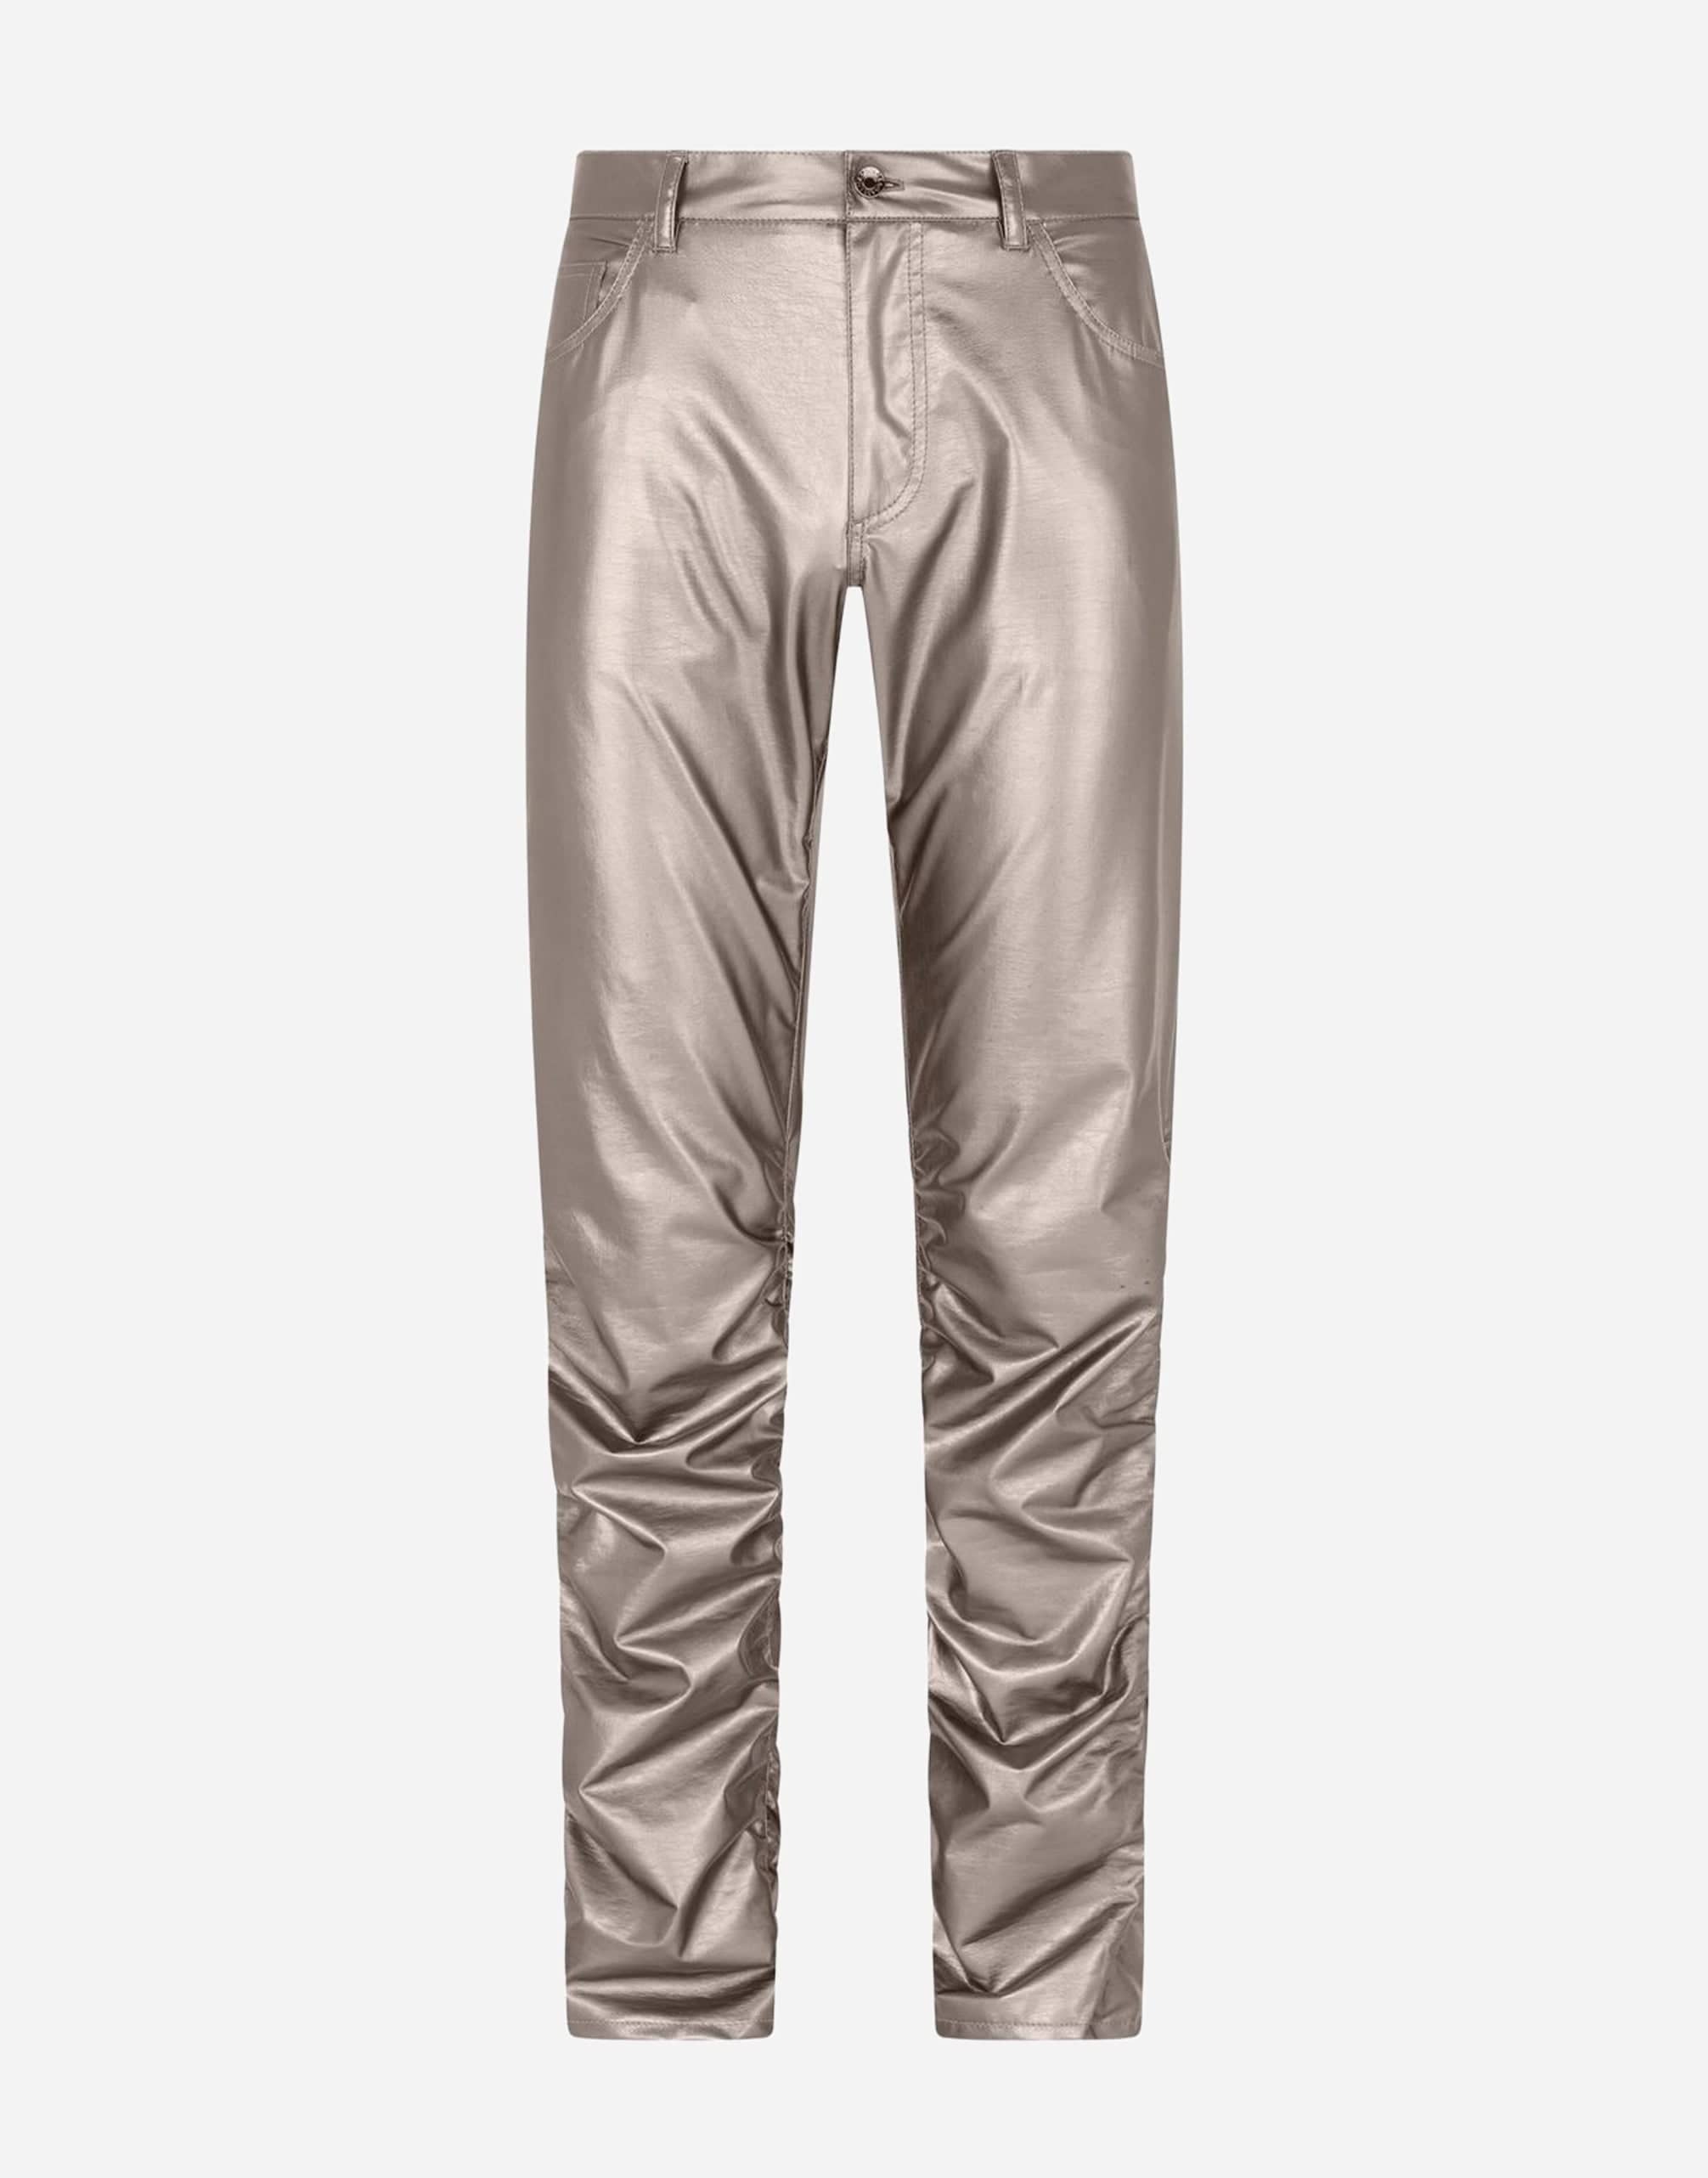 Dolce & Gabbana Silver Metallic Nylon Stretch Pants